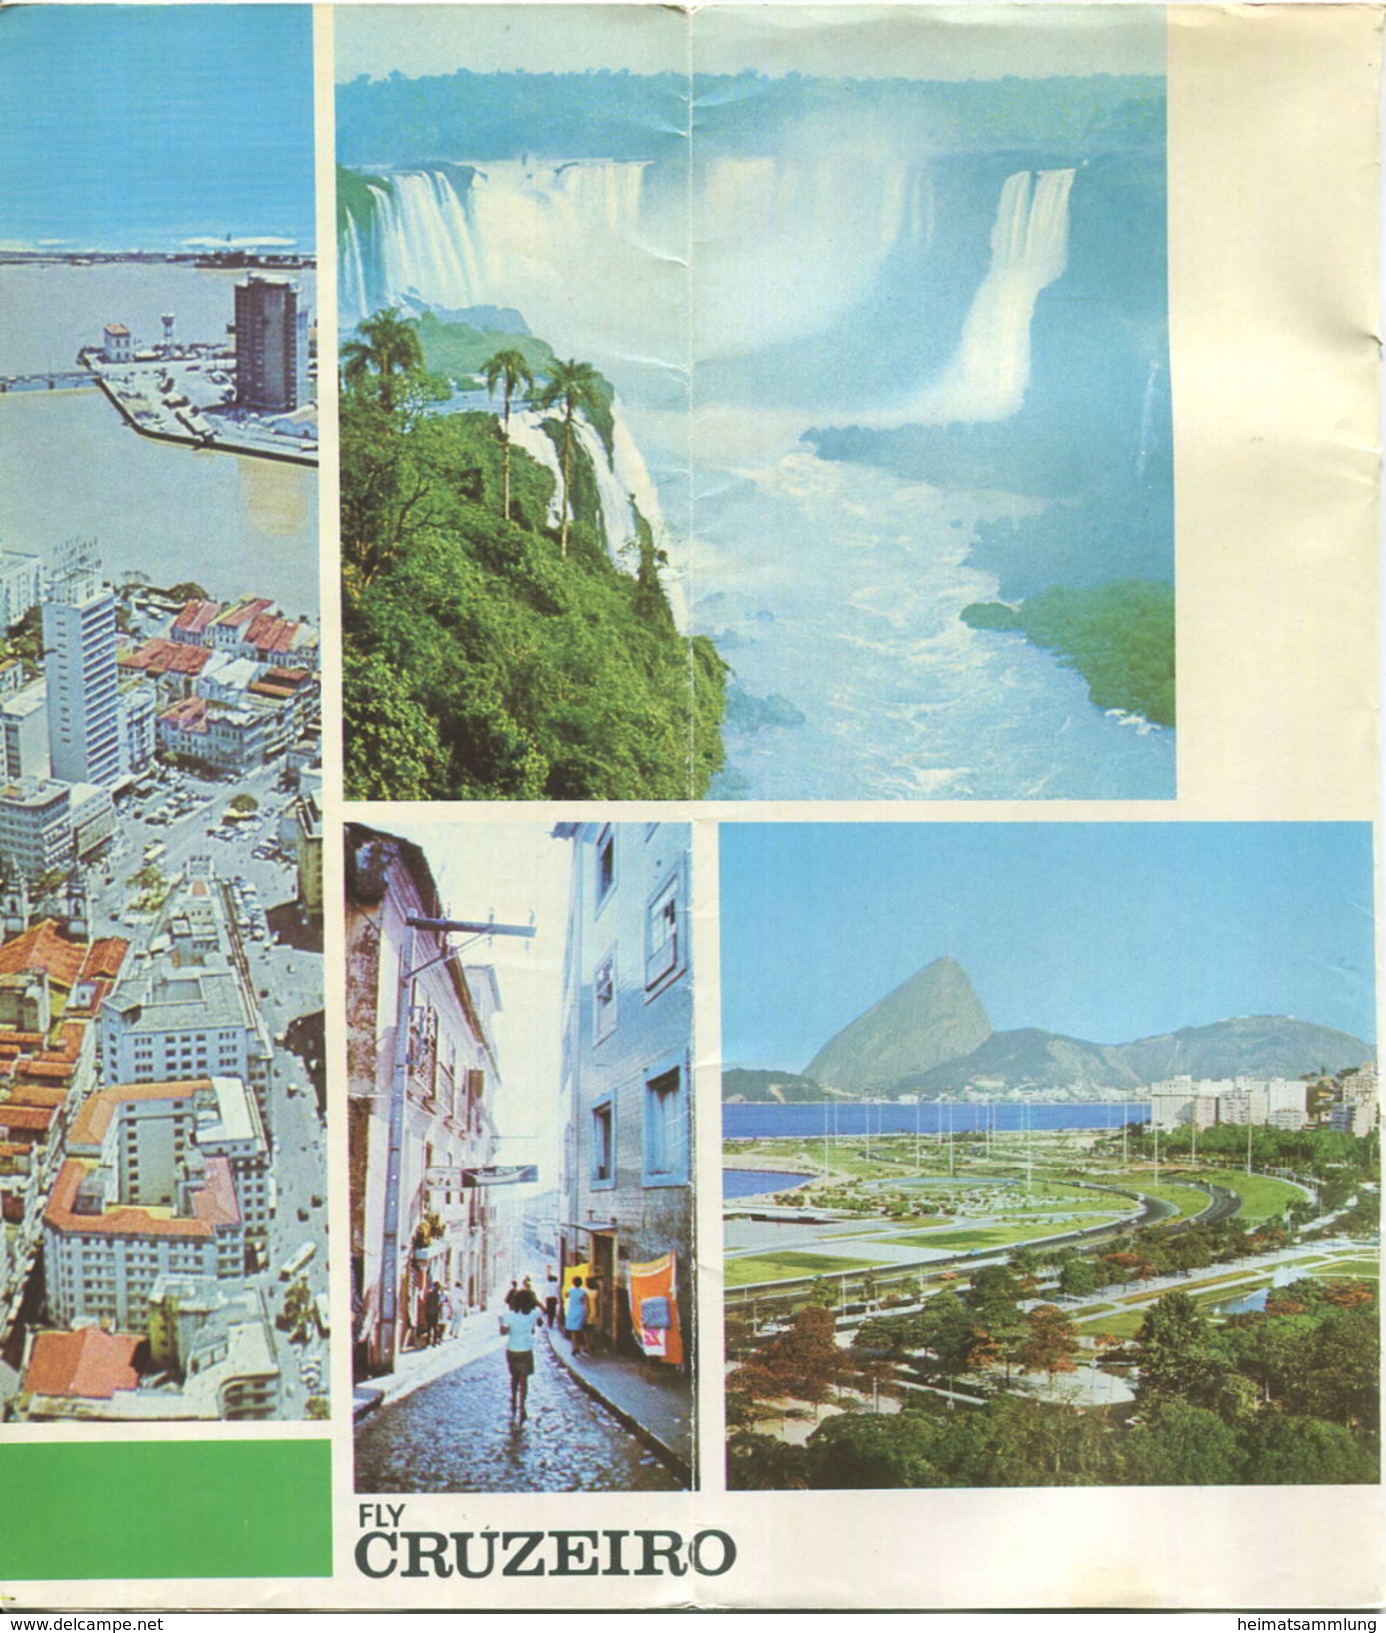 Brasil - Timetable Fly Cruzeiro 1970 - 8 Seiten Mit 10 Abbildungen - Flugdaten - Welt